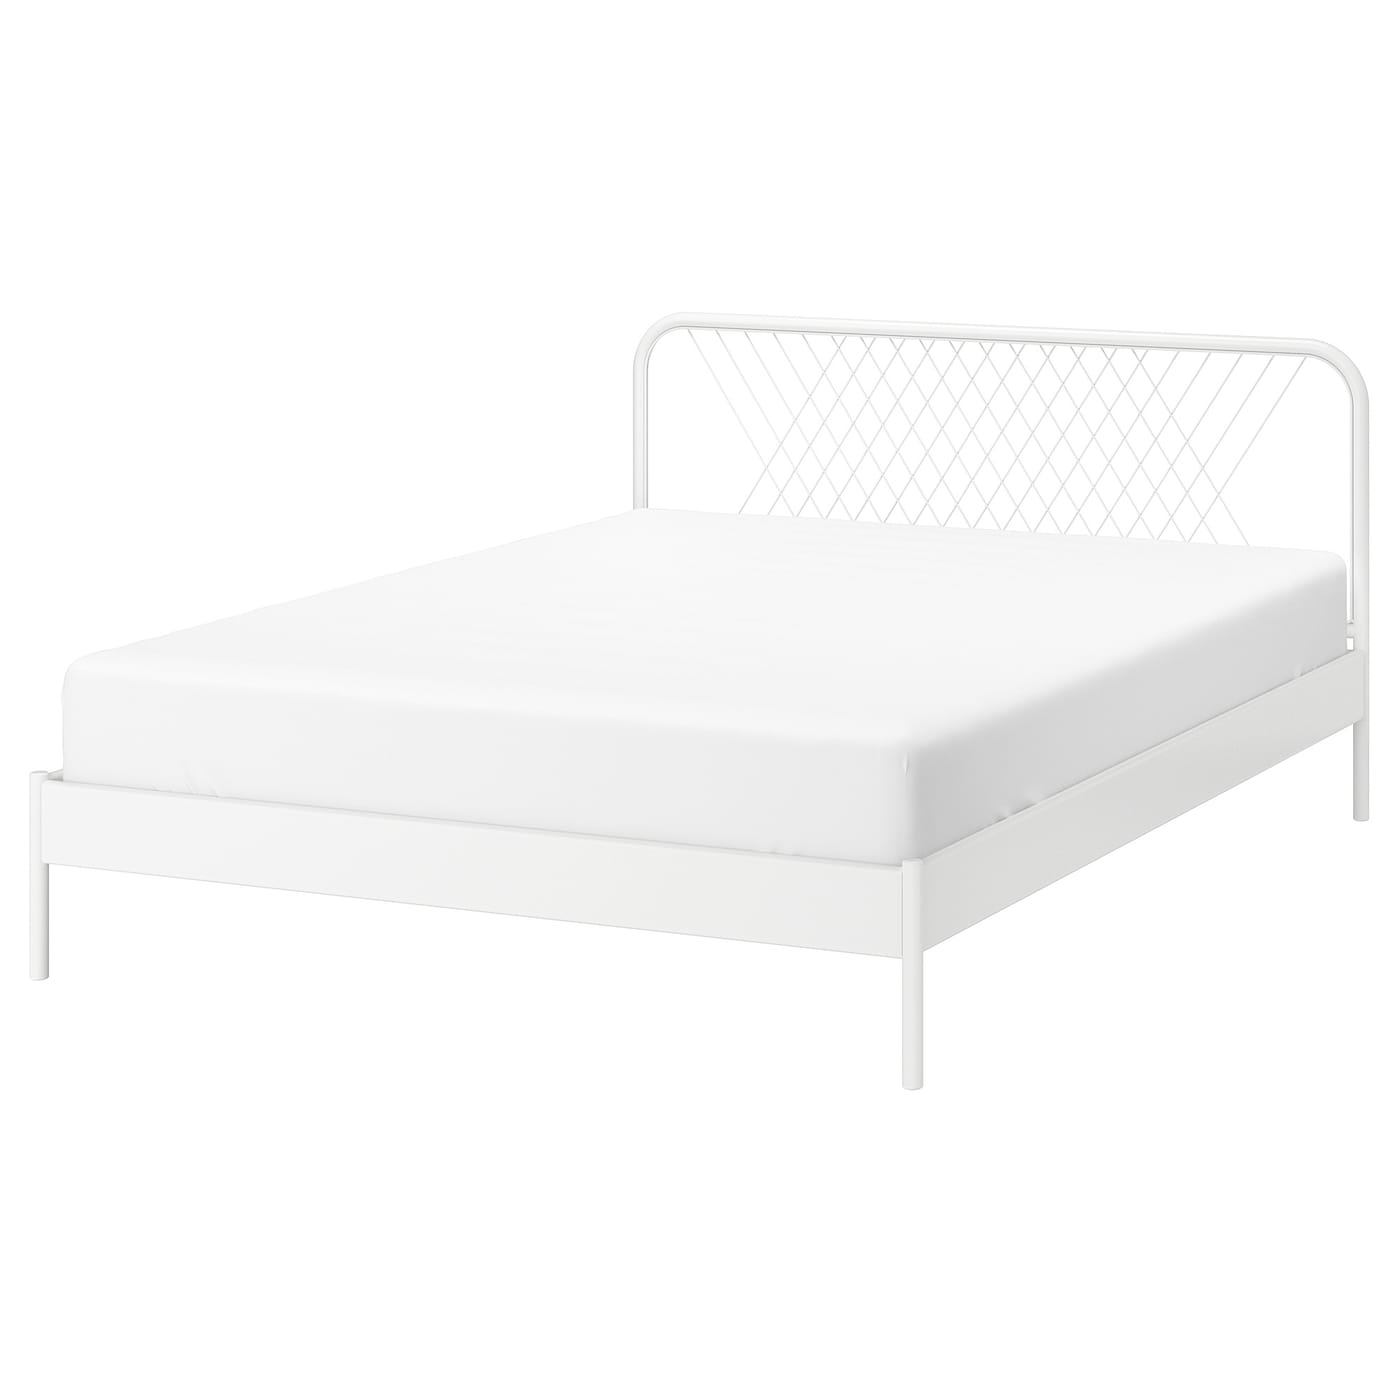 Каркас кровати - IKEA NESTTUN/LÖNSET/LONSET, 200х160 см, белый, НЕСТТУН/ЛОНСЕТ ИКЕА